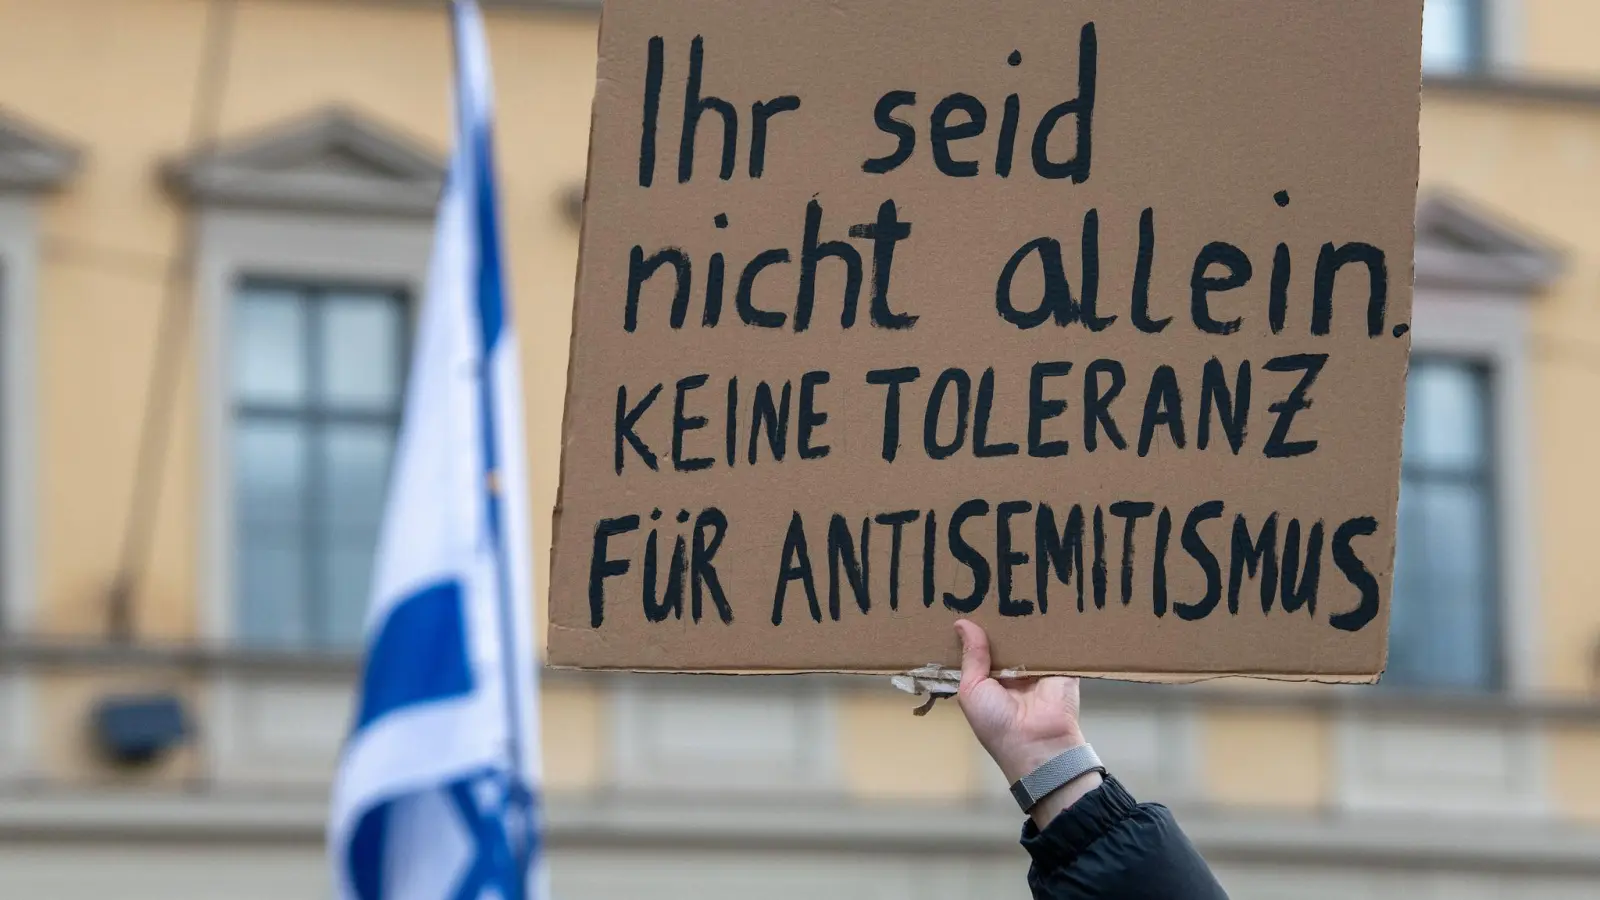 Kundgebung für Israel in München : „Ihr seid nicht allein. Keine Toleranz für Antisemitismus“. (Foto: Stefan Puchner/dpa)